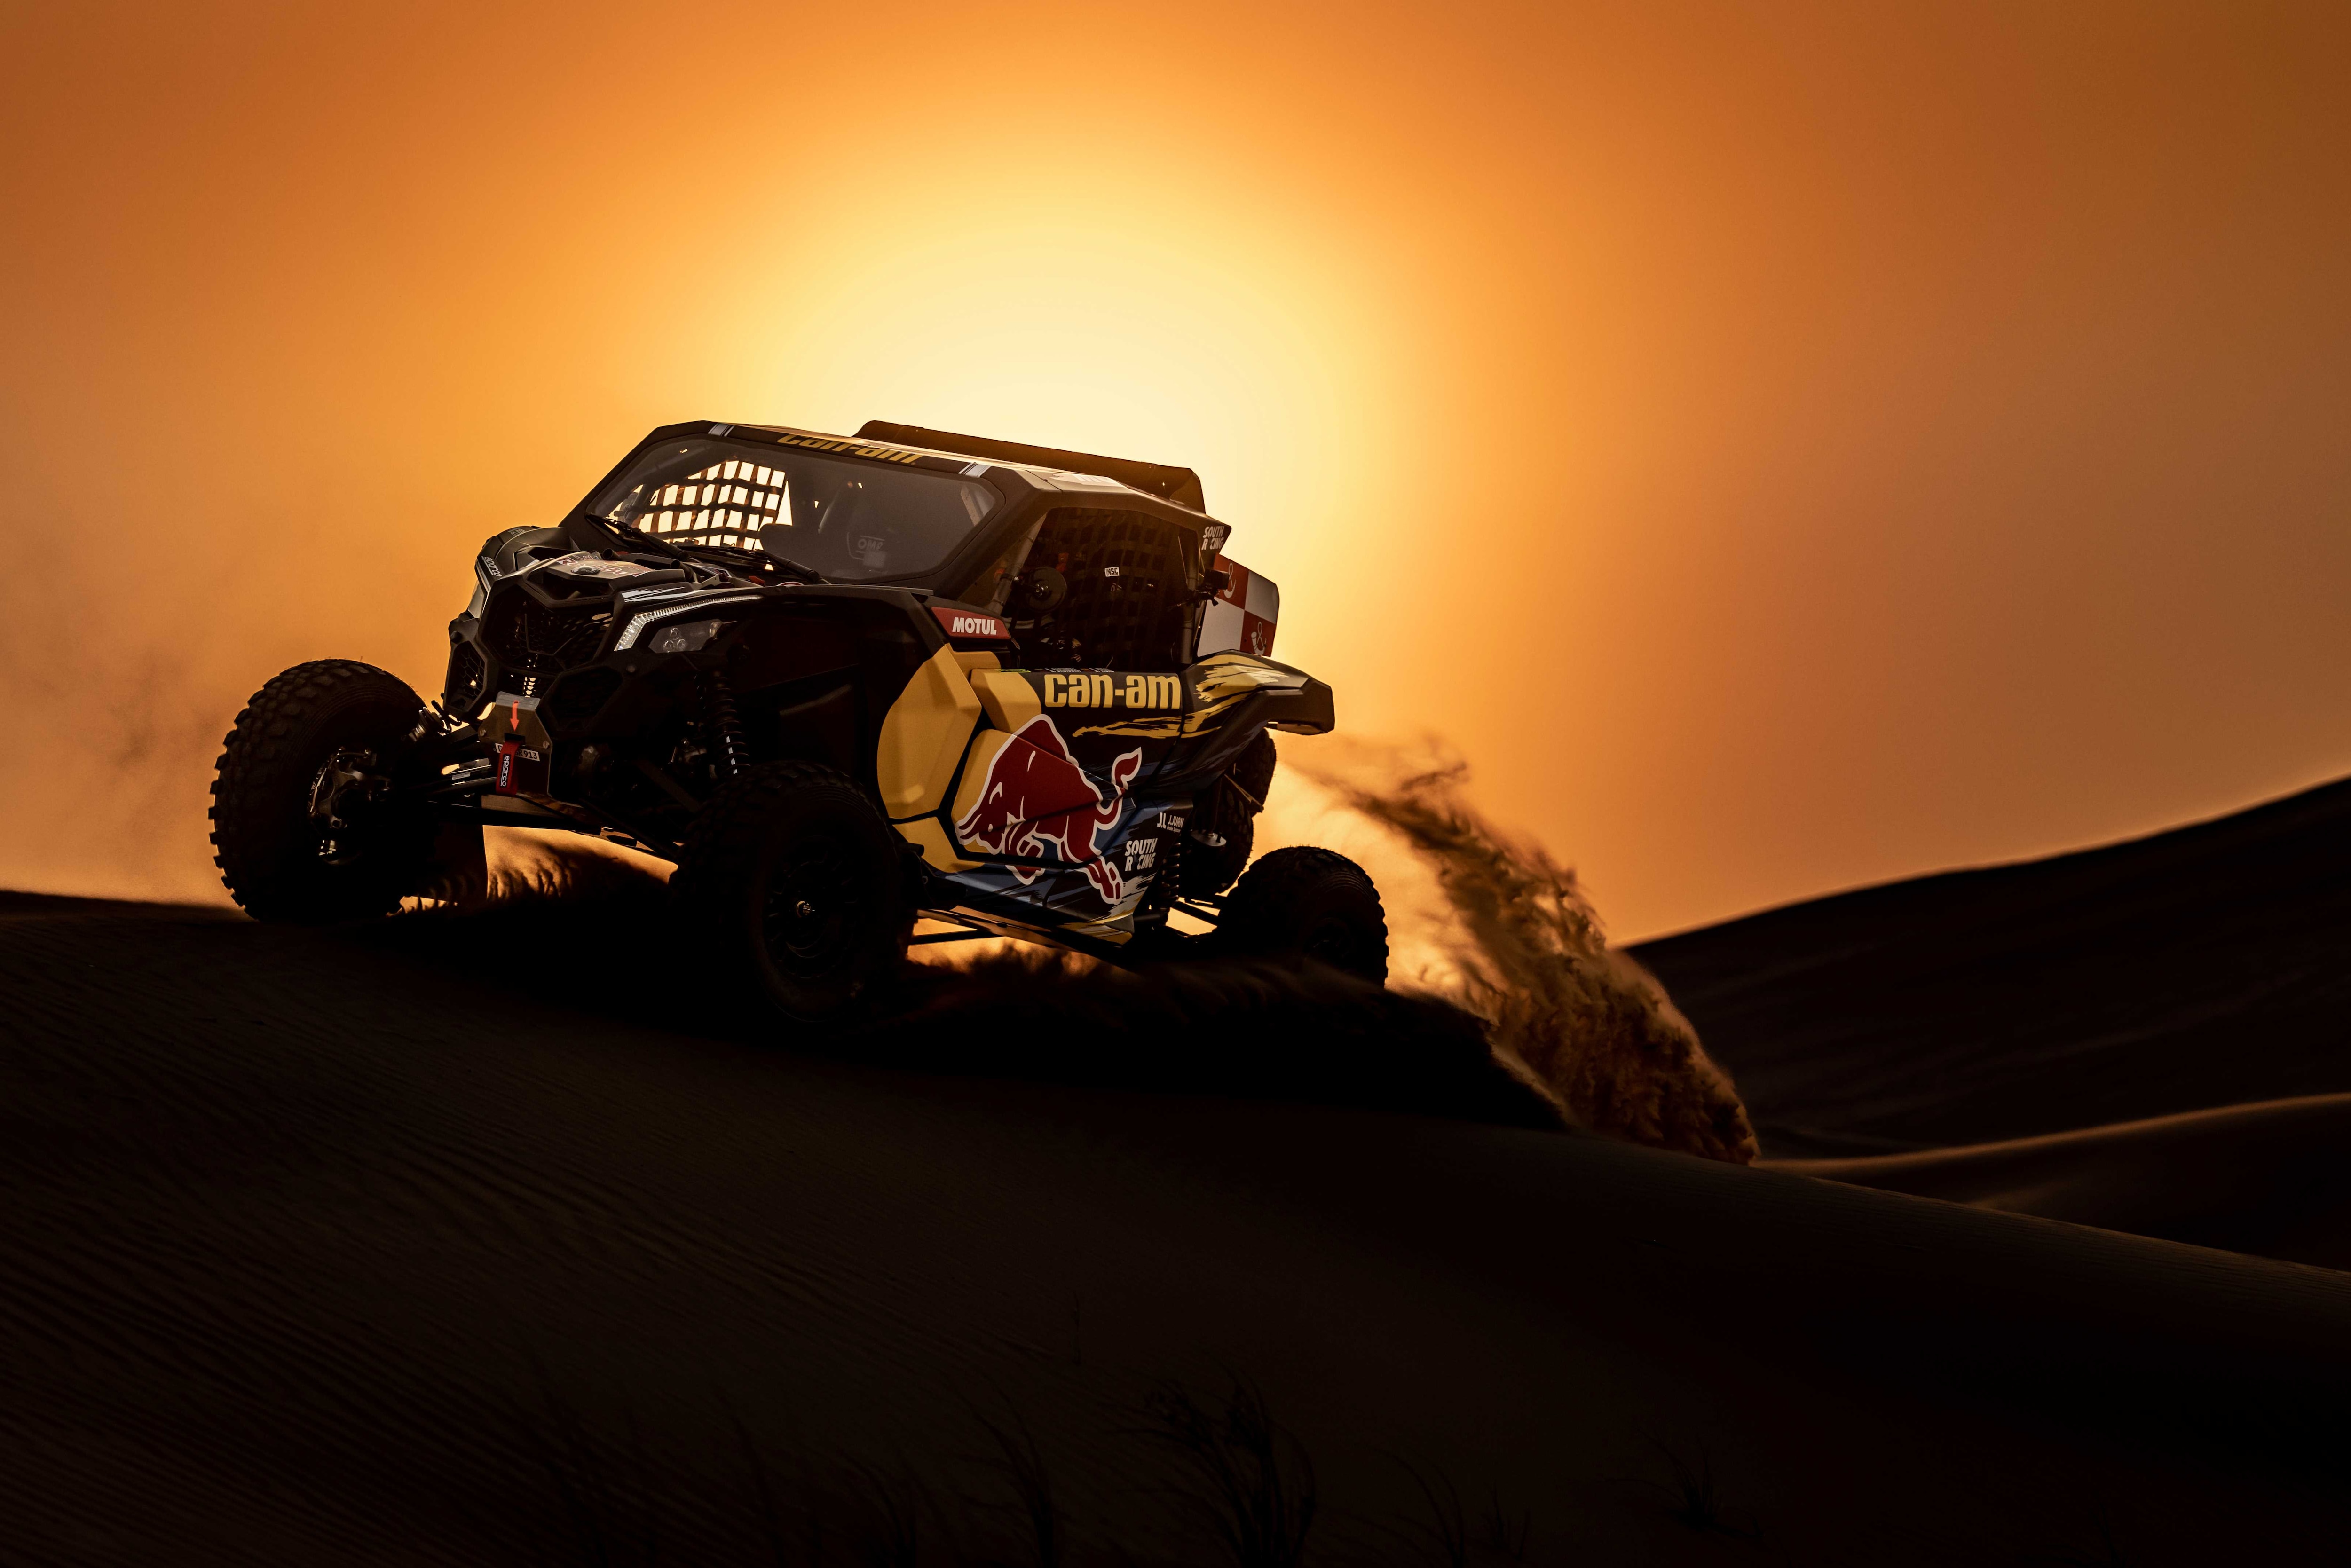 Imagem impressionante do Maverick X3 no deserto ao anoitecer